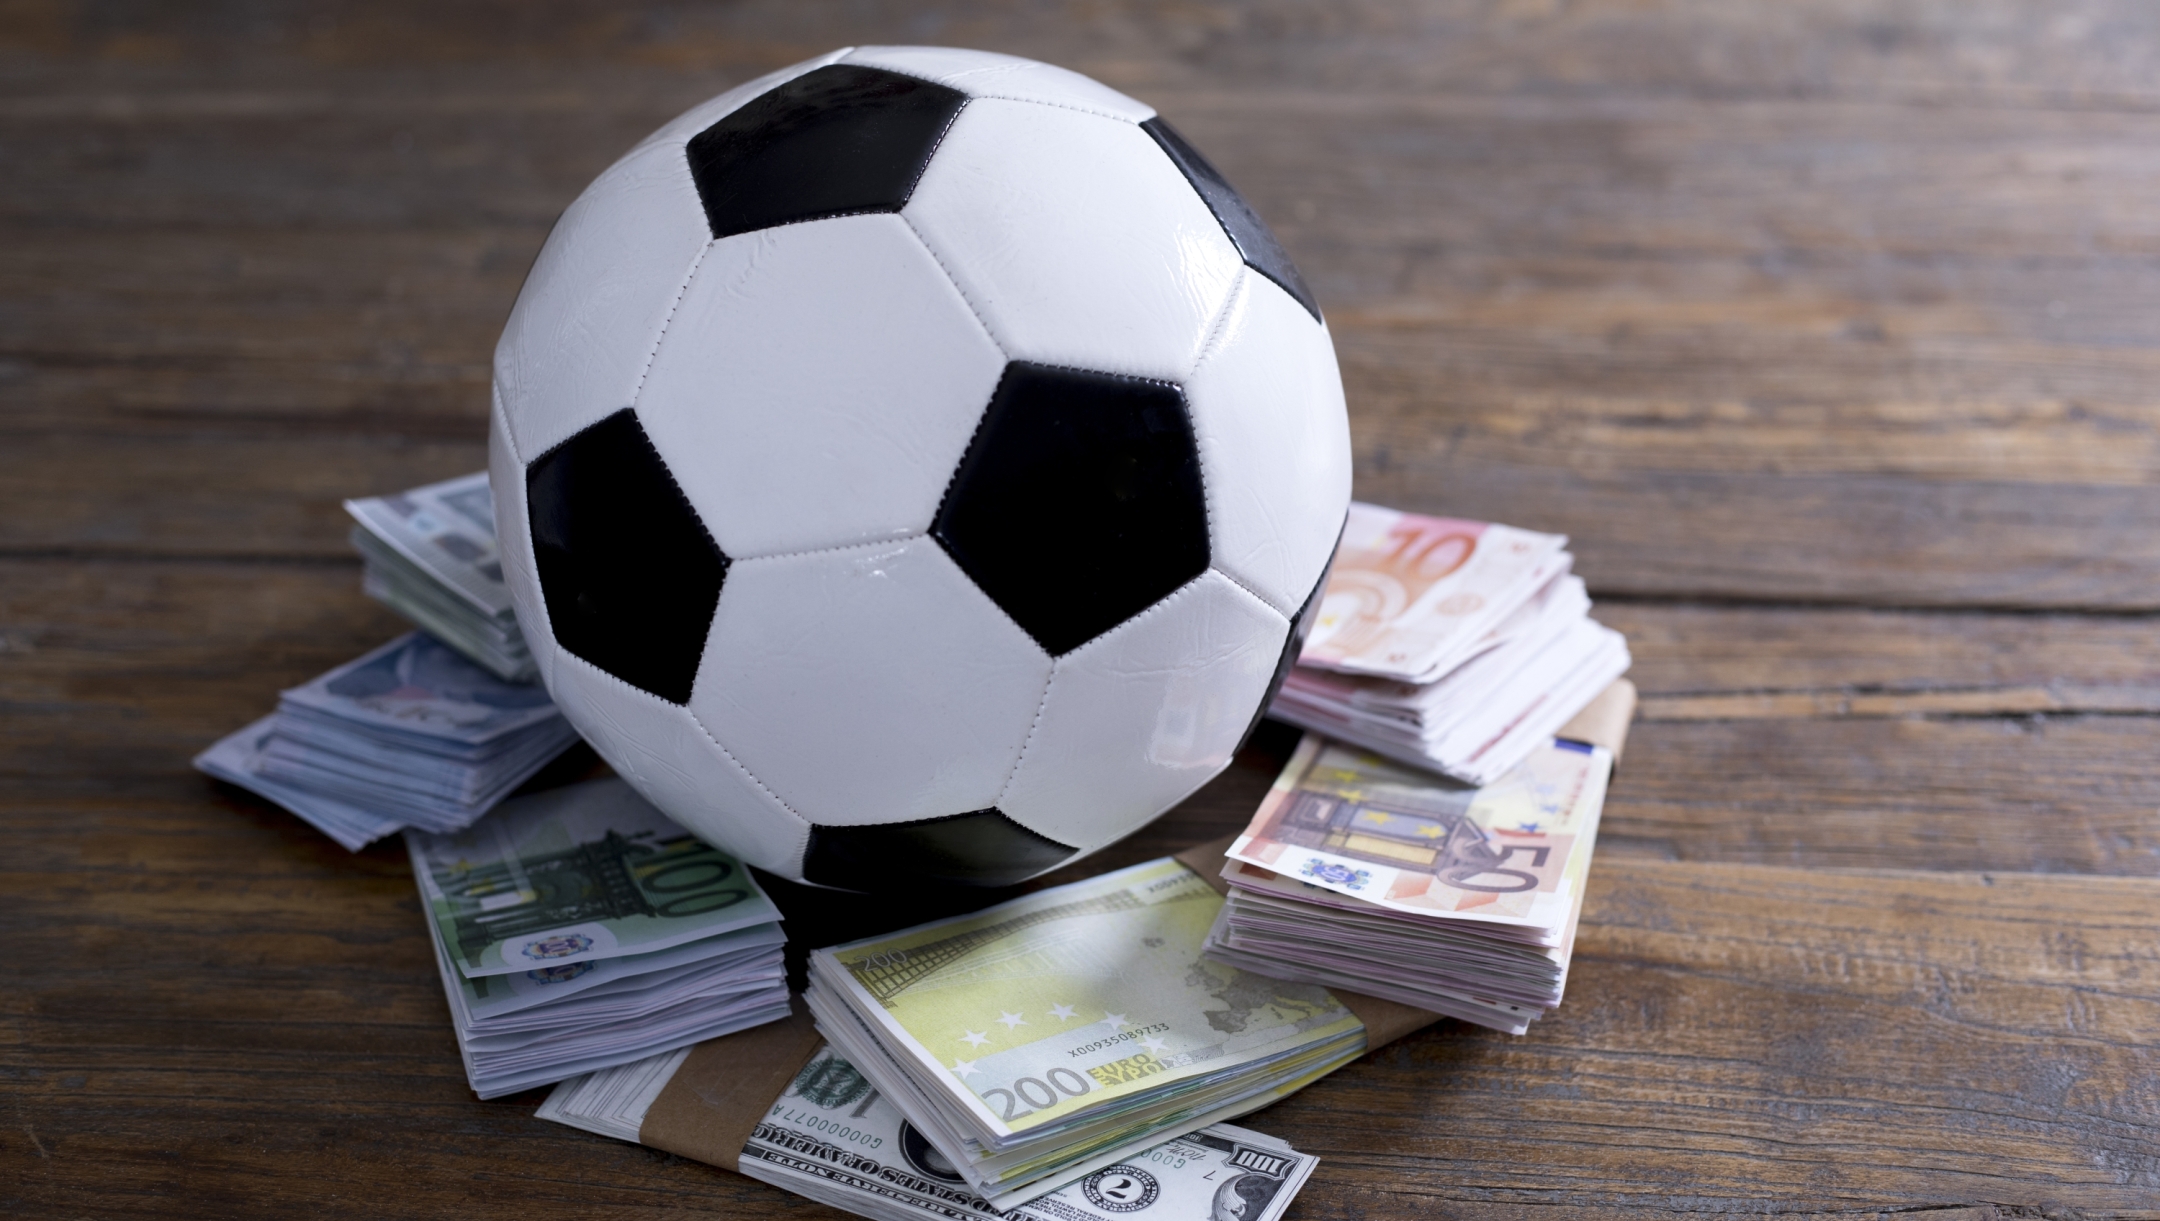 football gambling bet match fixed